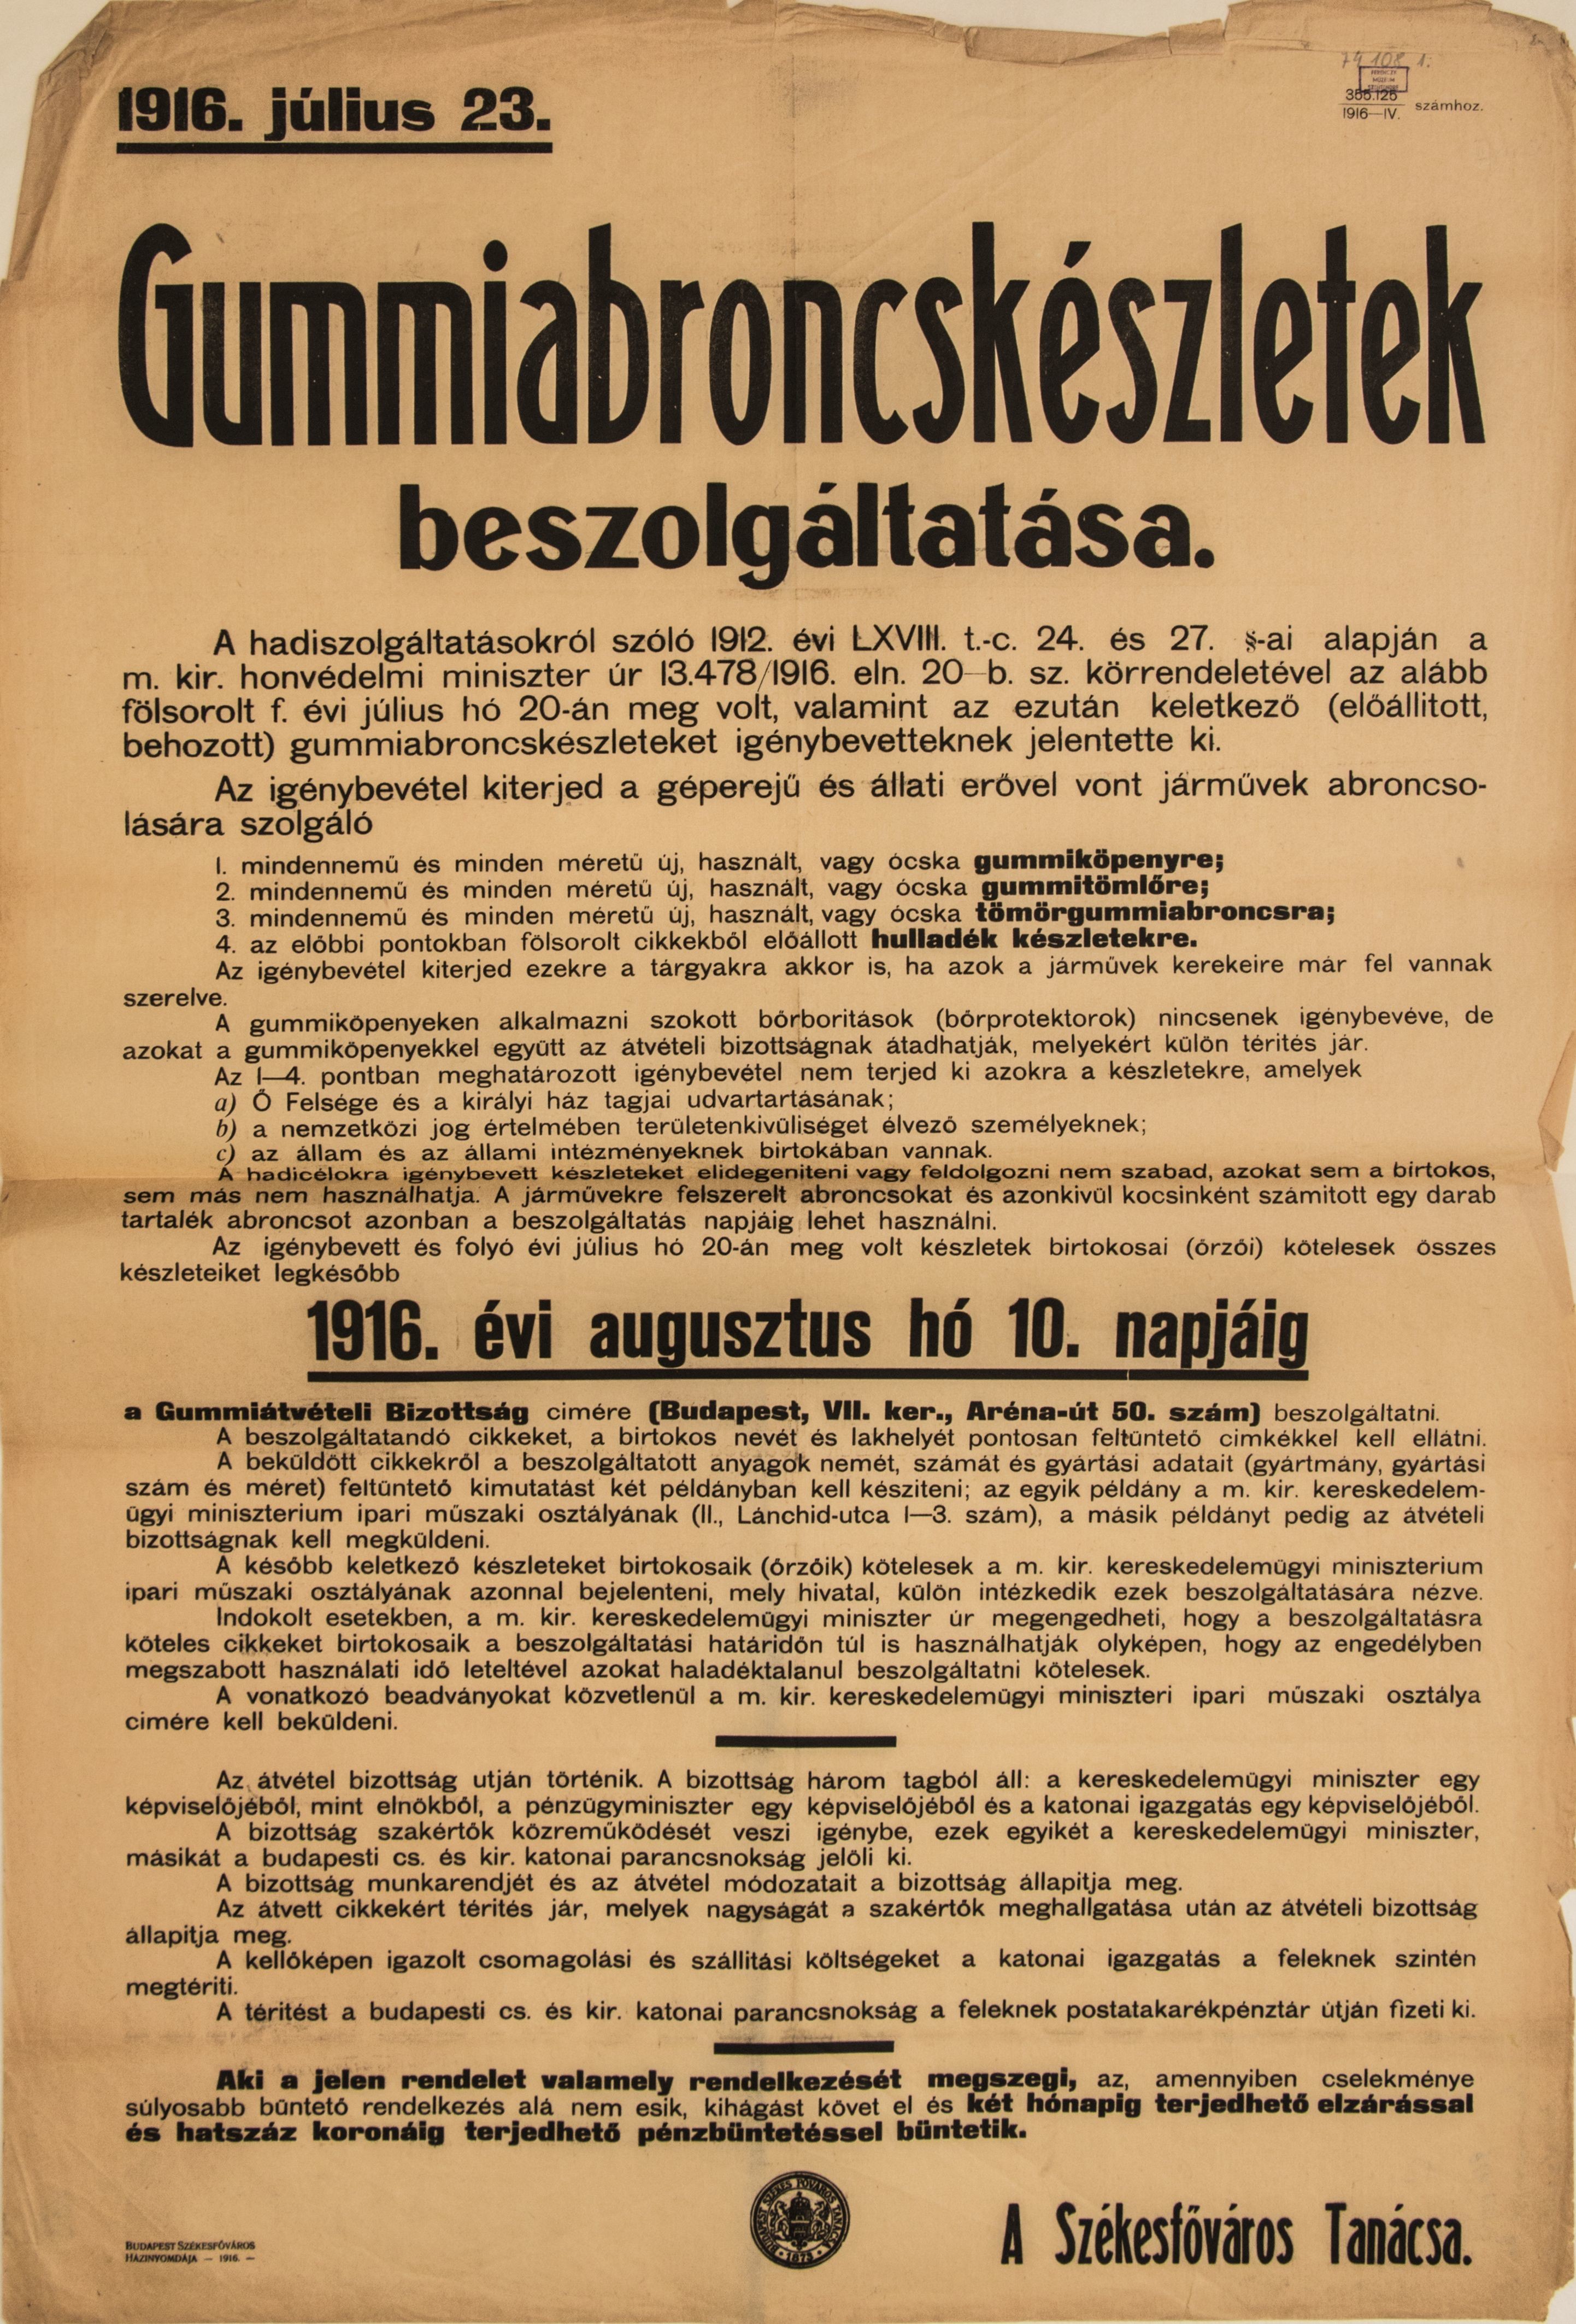 Gumiabroncskészletek beszolgáltatása, 1916.07.23. (sárga alap, fekete betű) (Ferenczy Múzeumi Centrum CC BY-NC-SA)